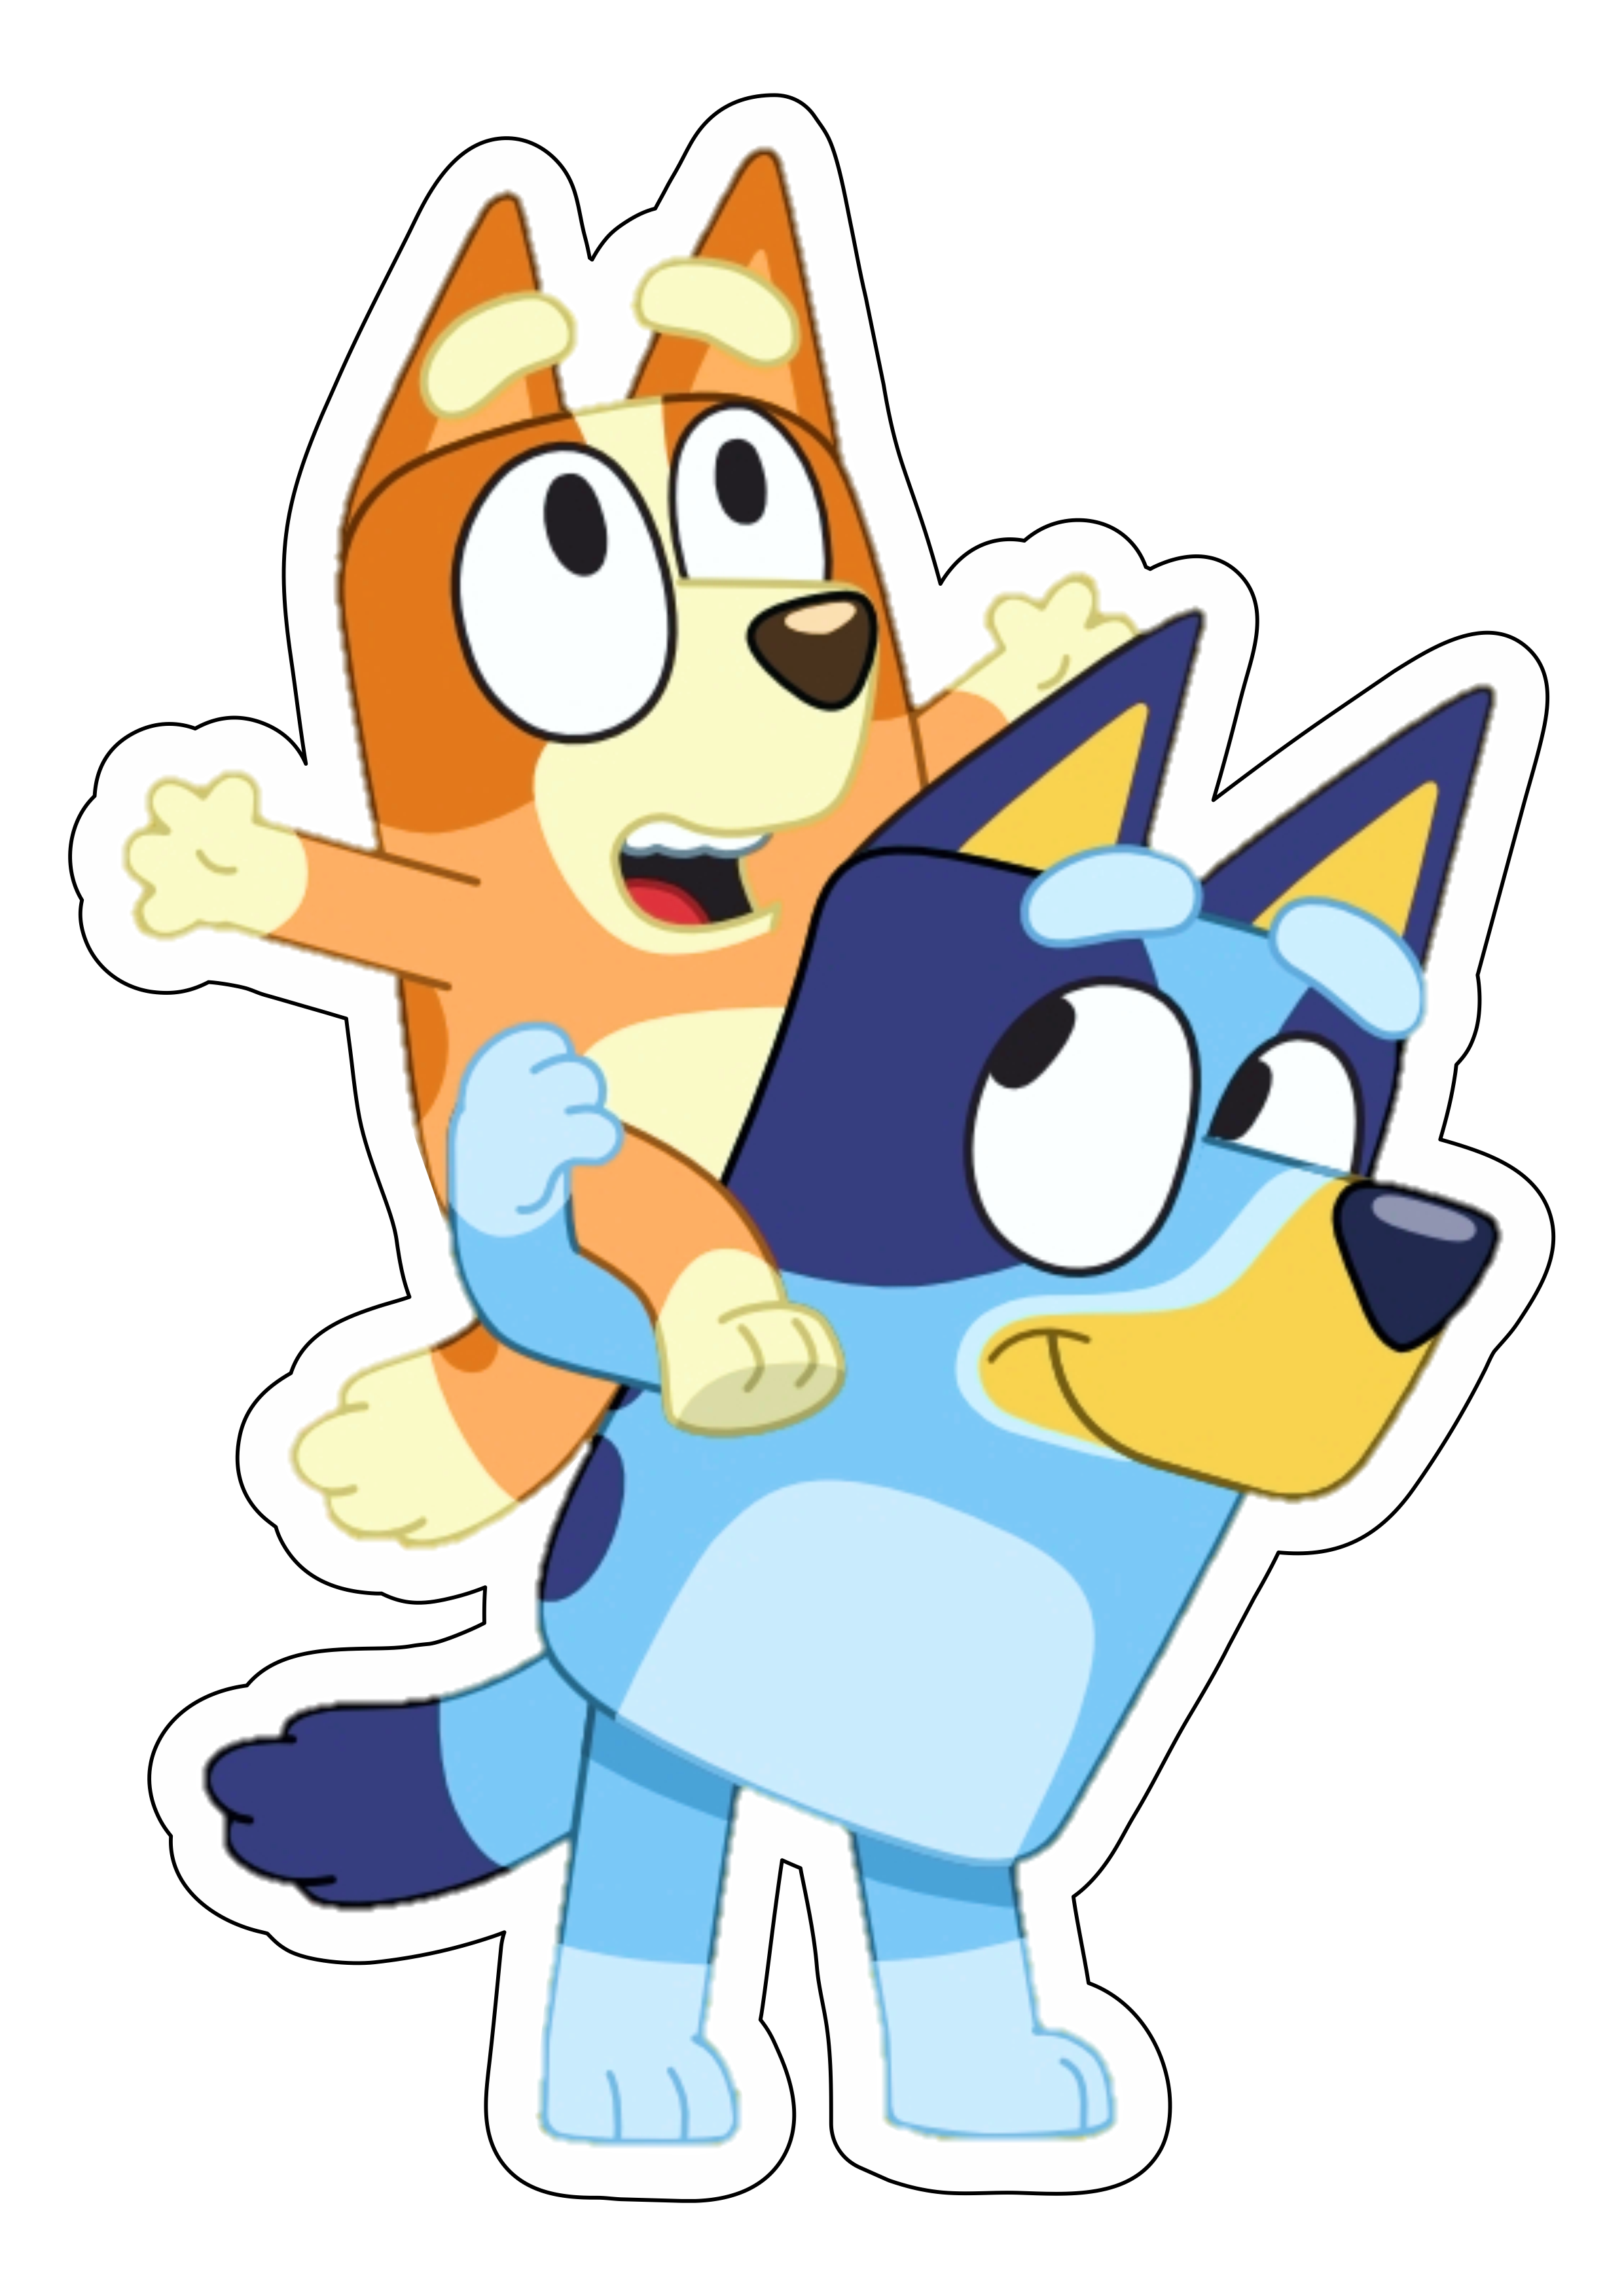 Bluey e bingo desenho de cachorros personagem fictício infantil divertido disney plus aniversário fundo transparente png